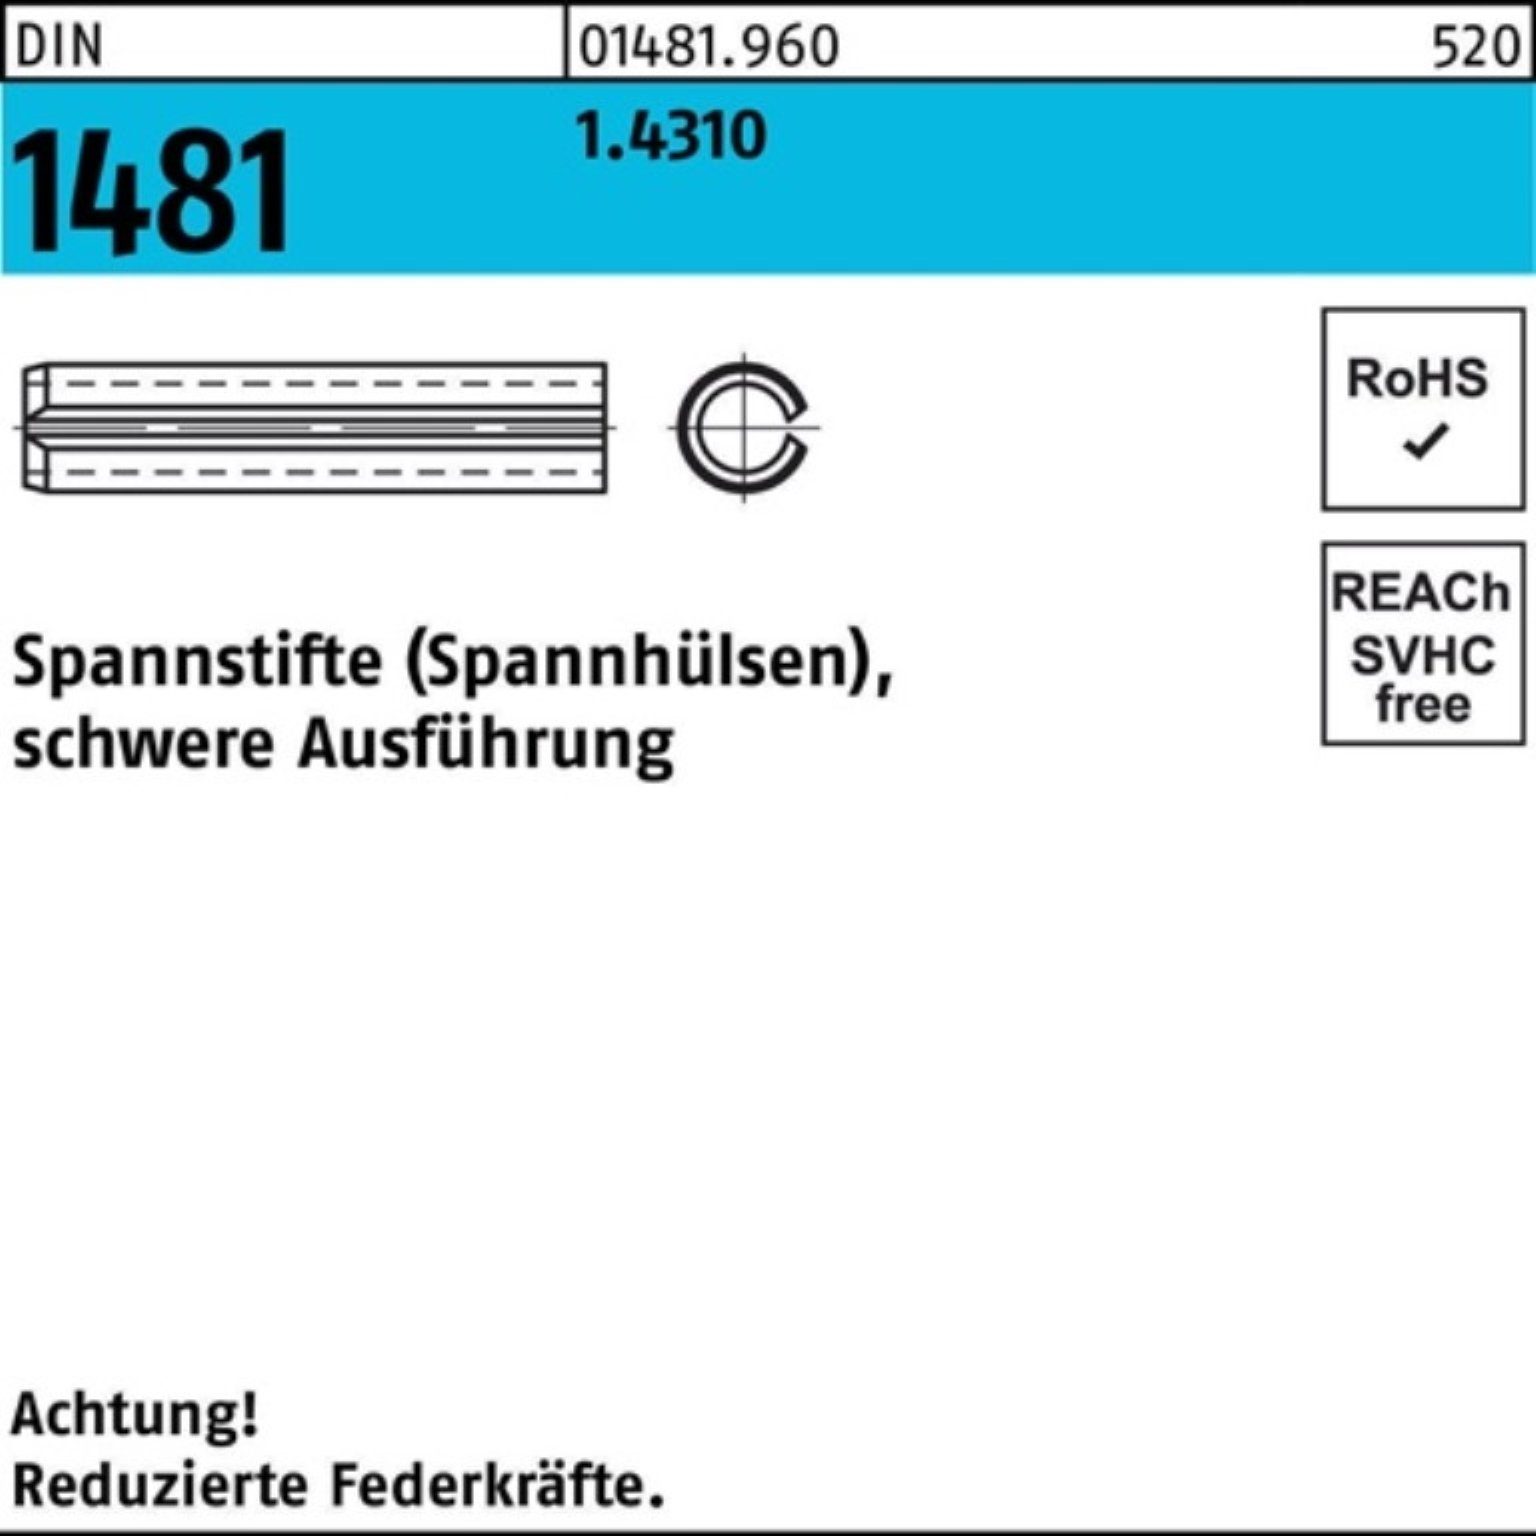 Reyher Spannstift 100er DIN Pack 1.4310 2,5x Spannstift schwere 100 1481 Ausführung 14